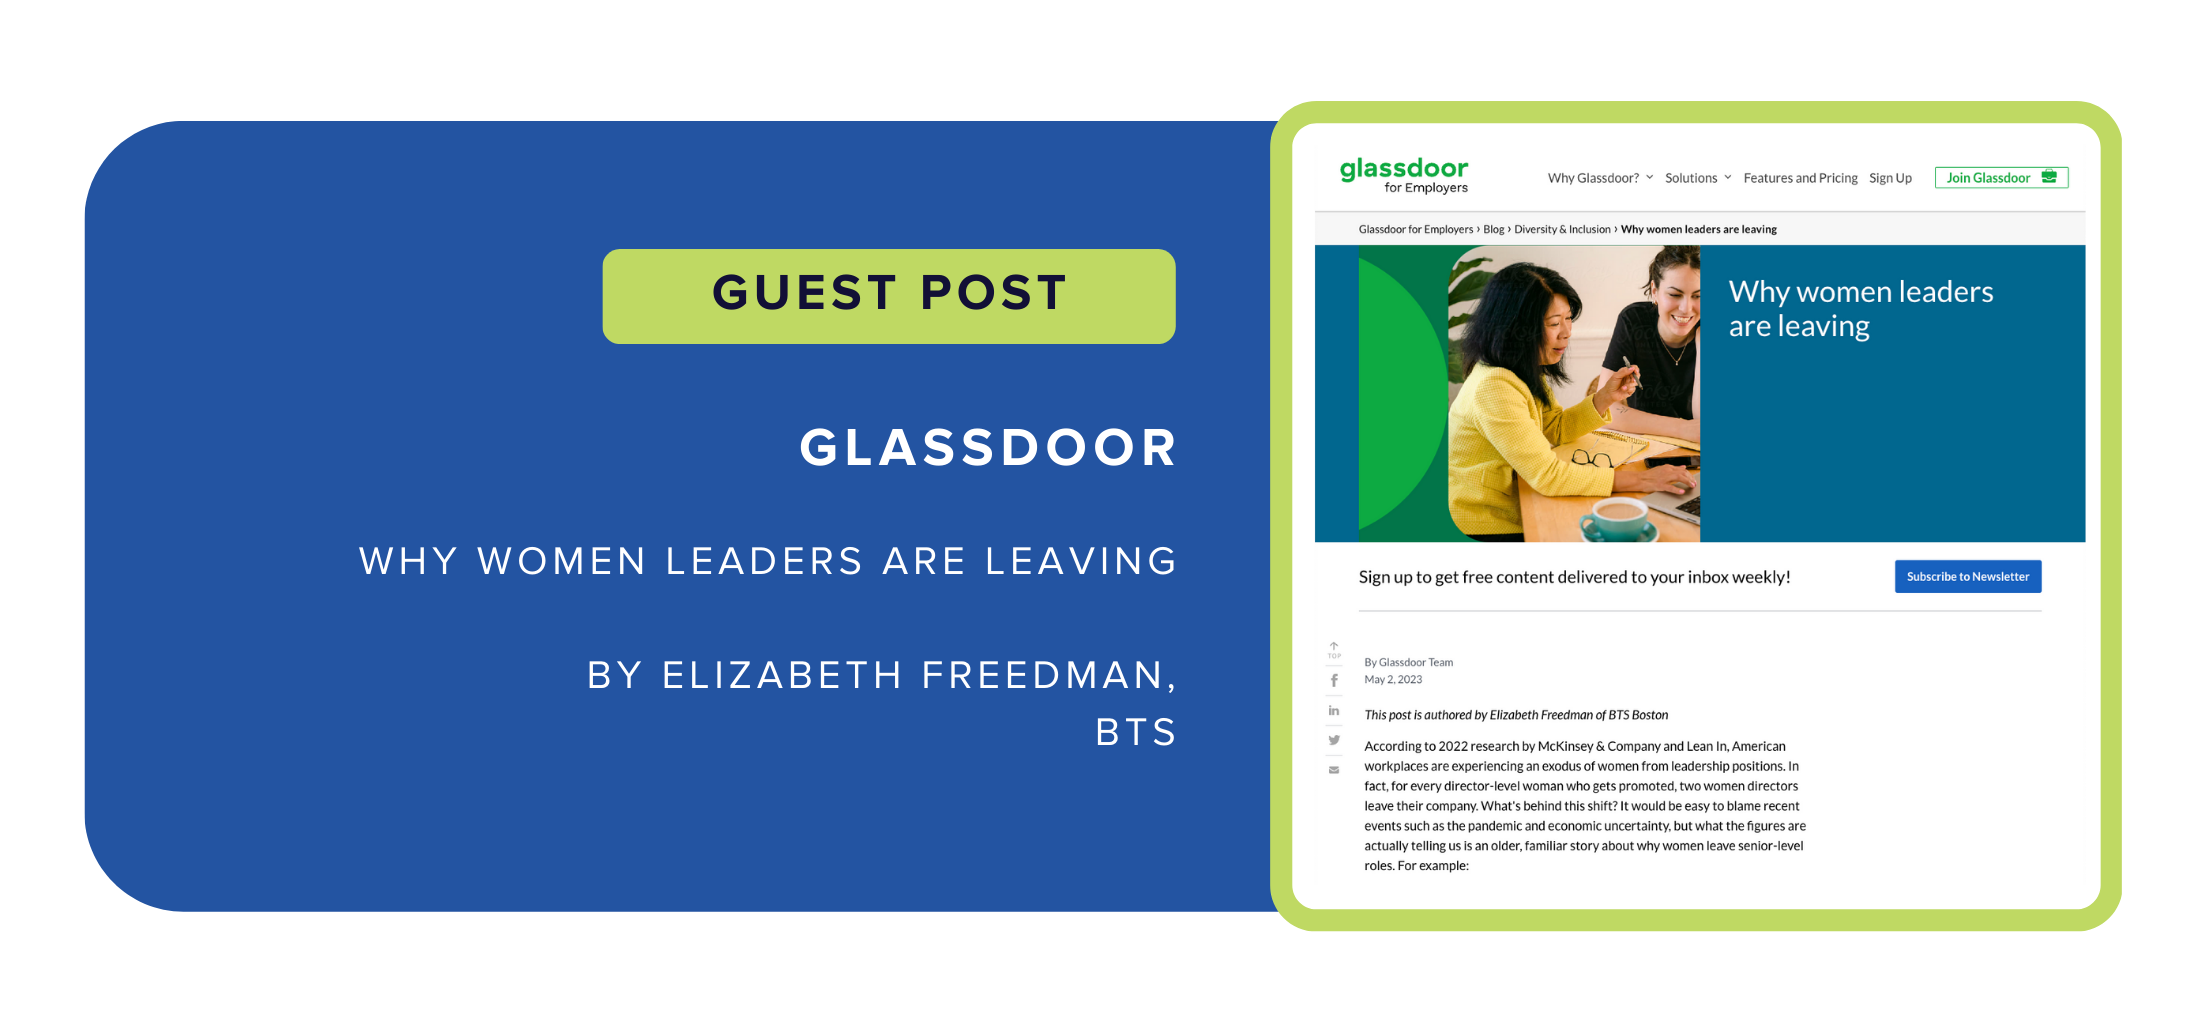 Guest Post in Glassdoor: "Why women leaders are leaving" by Elizabeth Freedman, BTS